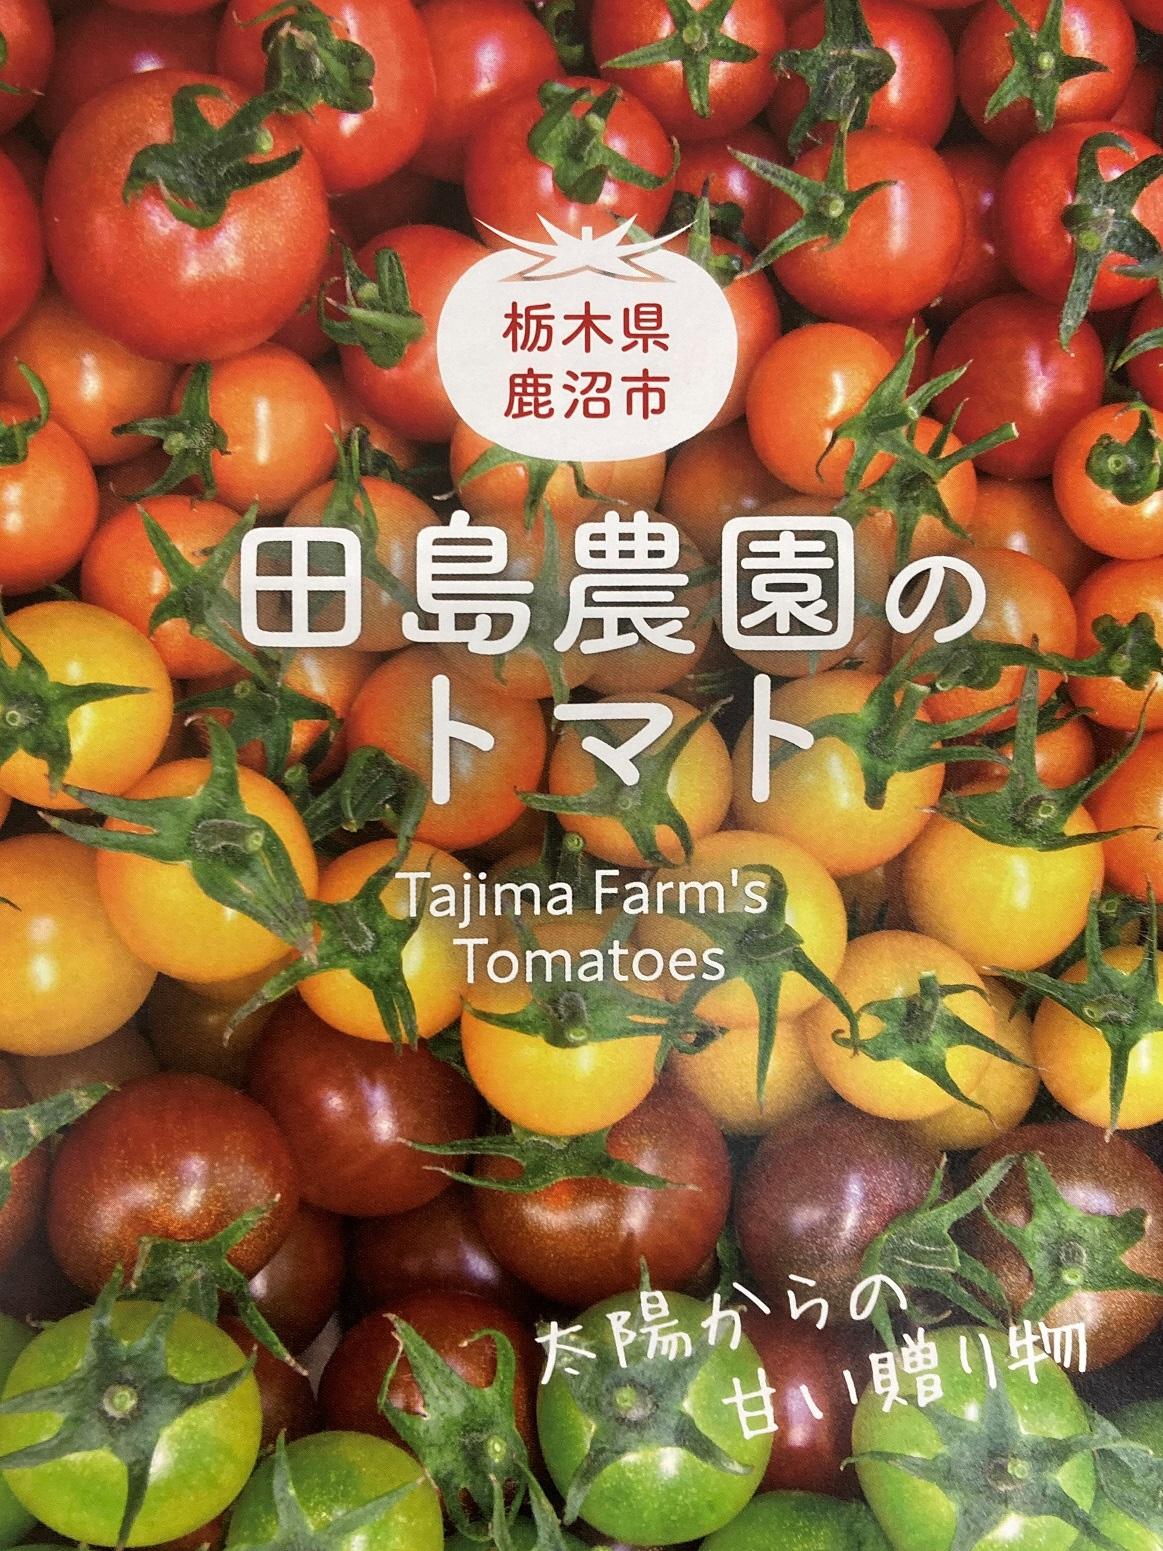 冒頭田島農園のトマトのチラシ画素低